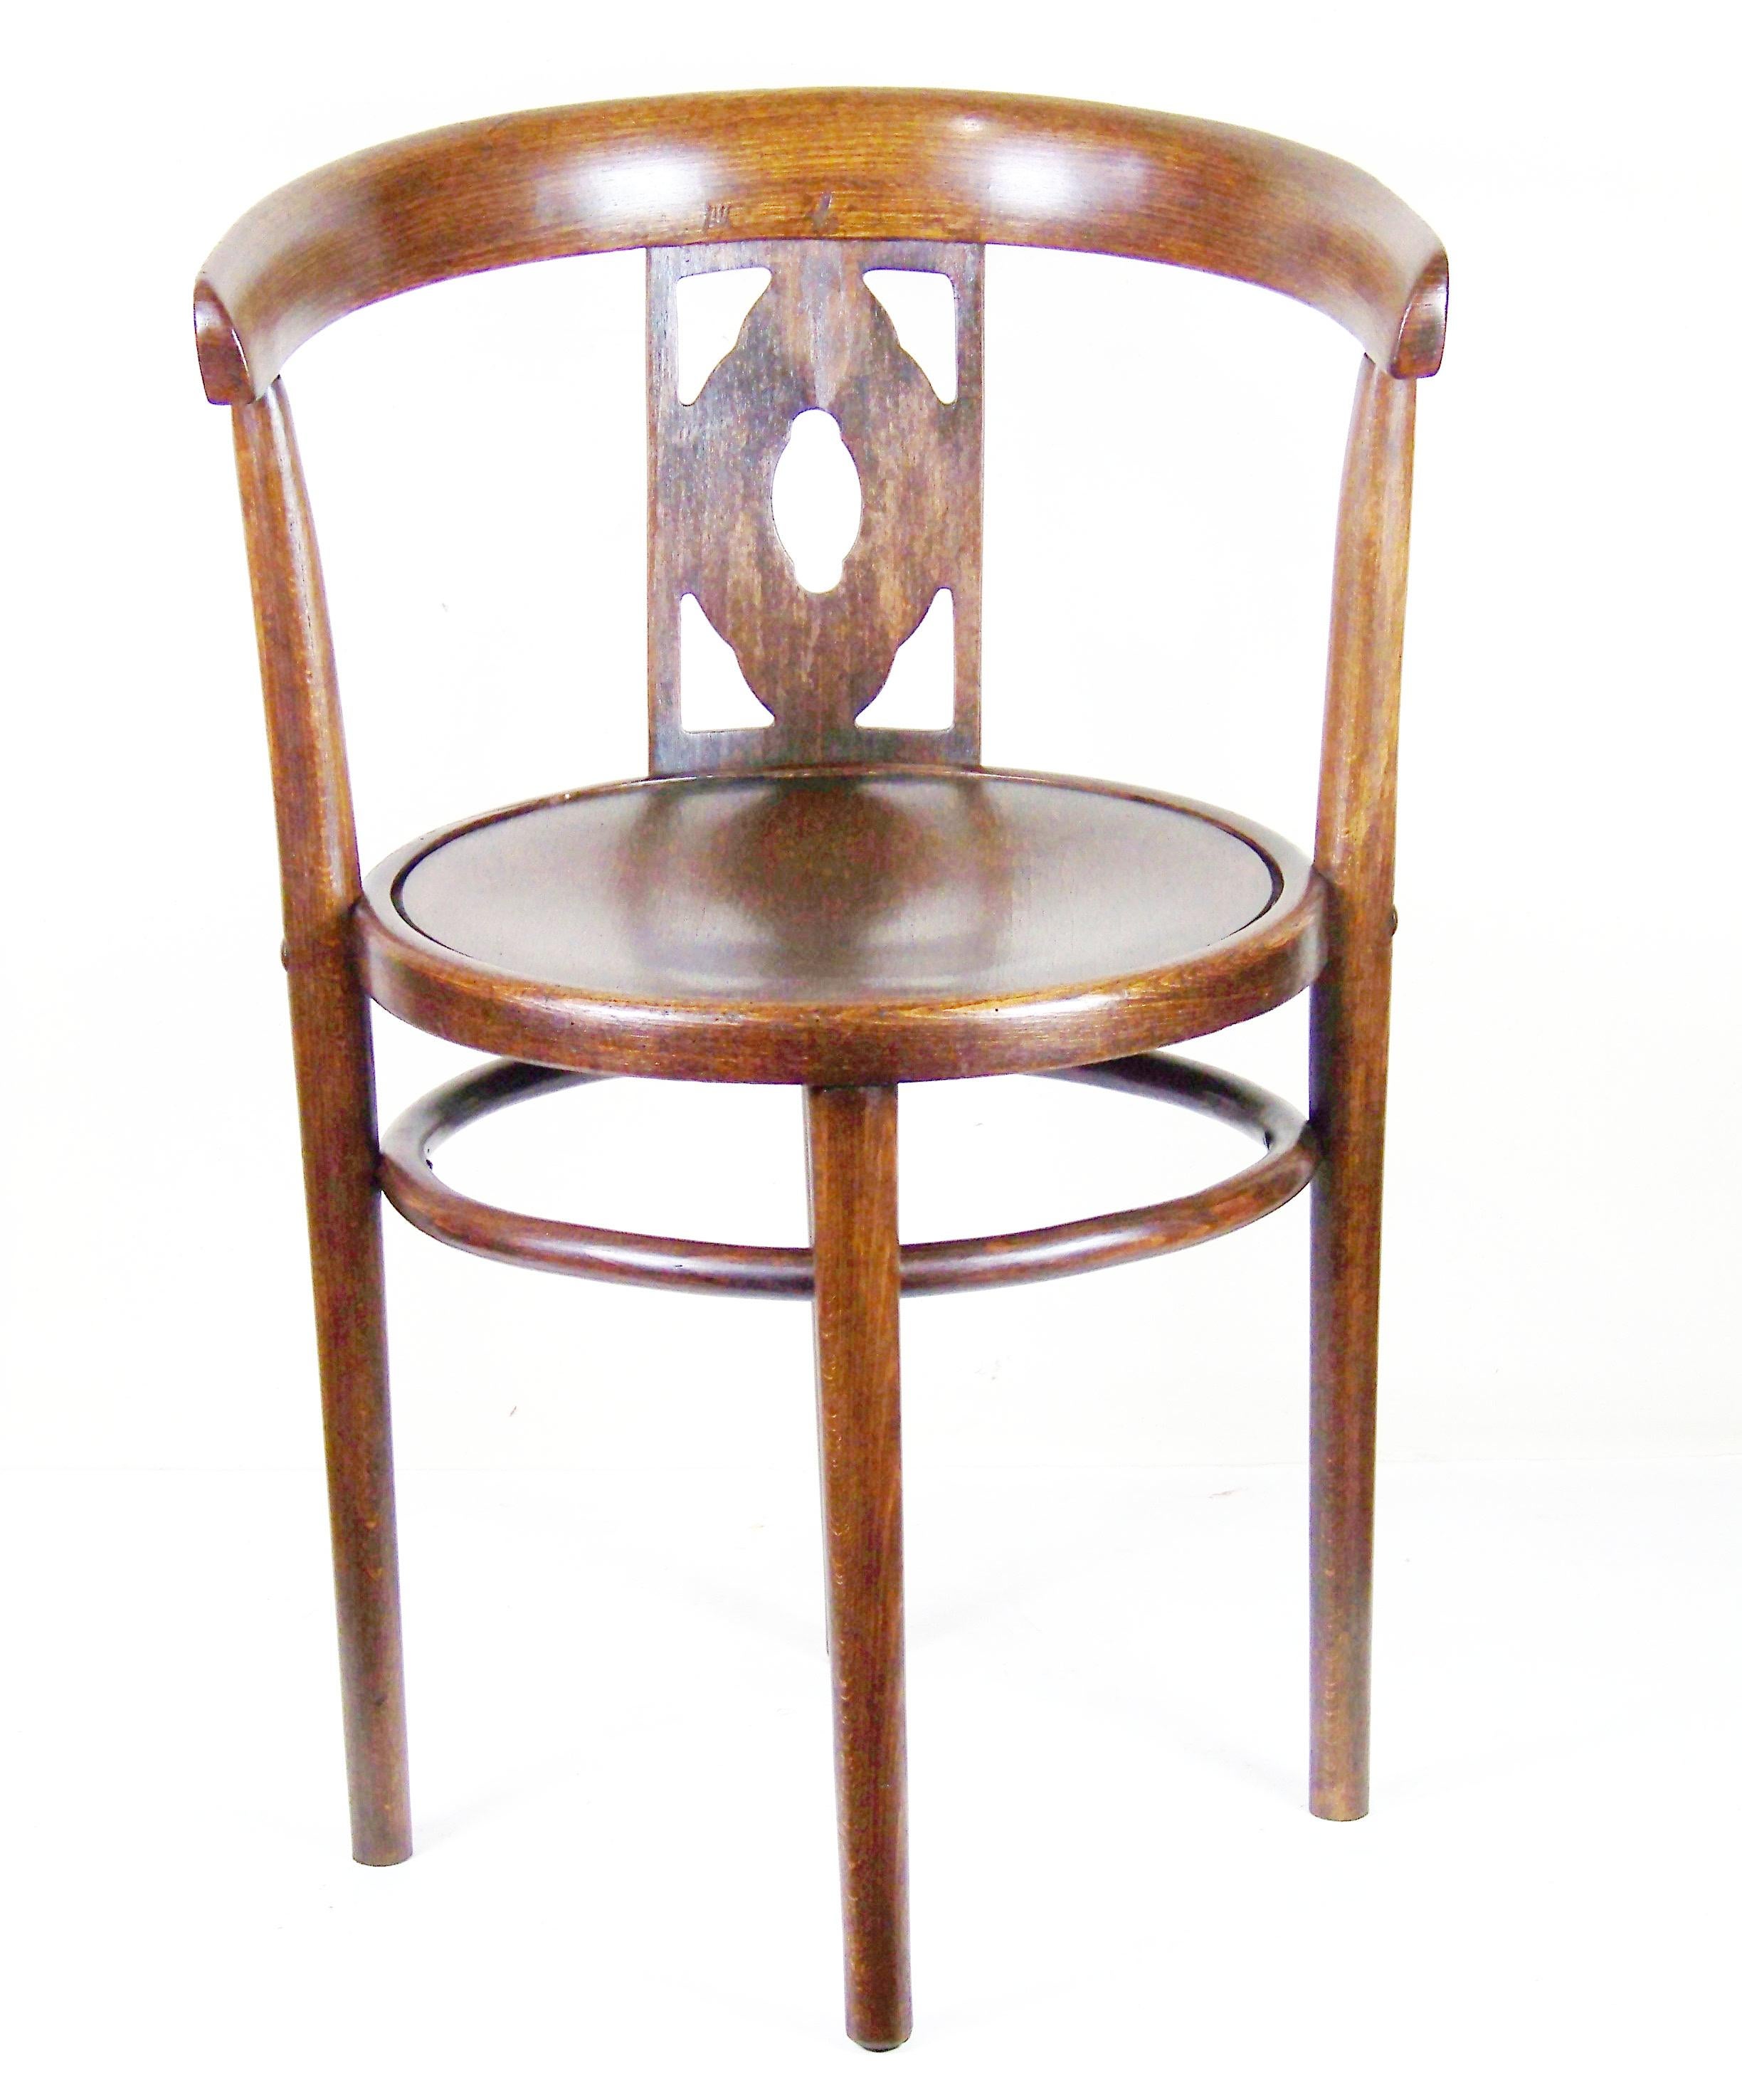 En très bel état d'origine, parfaitement nettoyé et poli à la gomme-laque. La chaise a une finition intéressante - imitation bois de chêne (qui a été créée en perçant des pores artificiels imitant le bois de chêne dans du bois de hêtre et en le